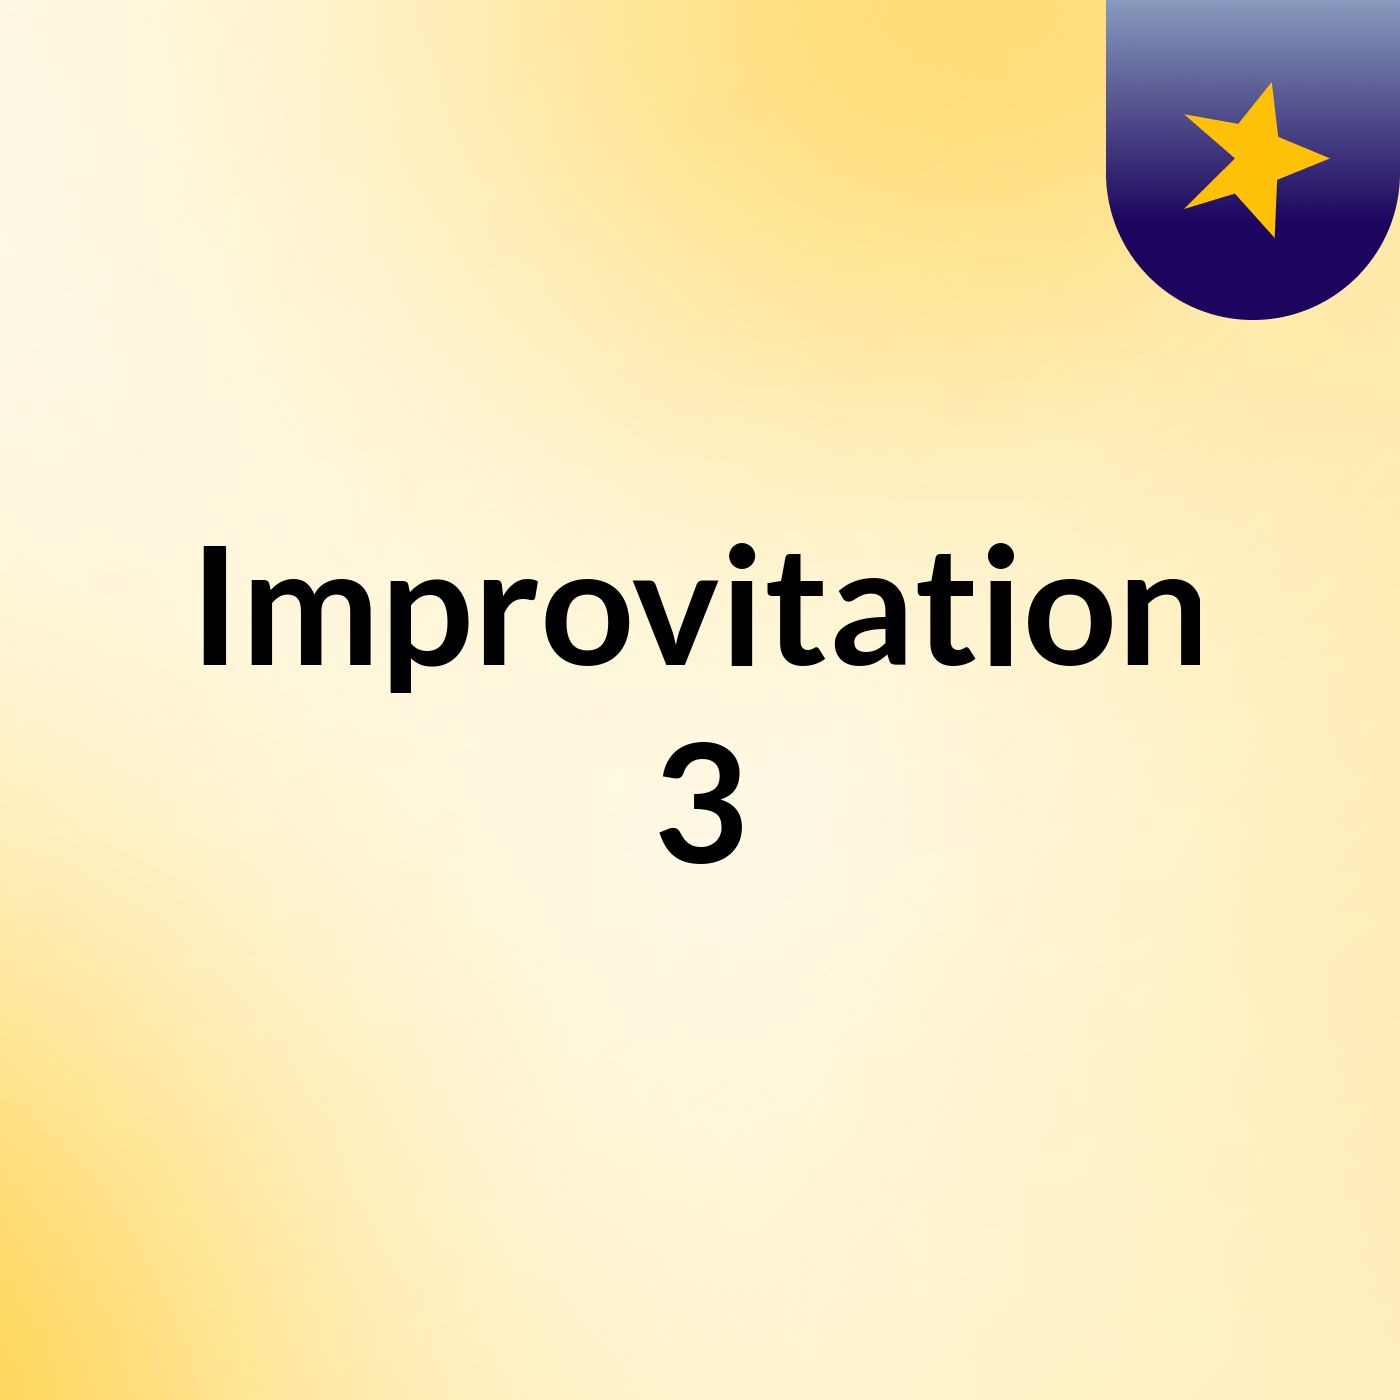 Episodio 3 - Improvitation 3